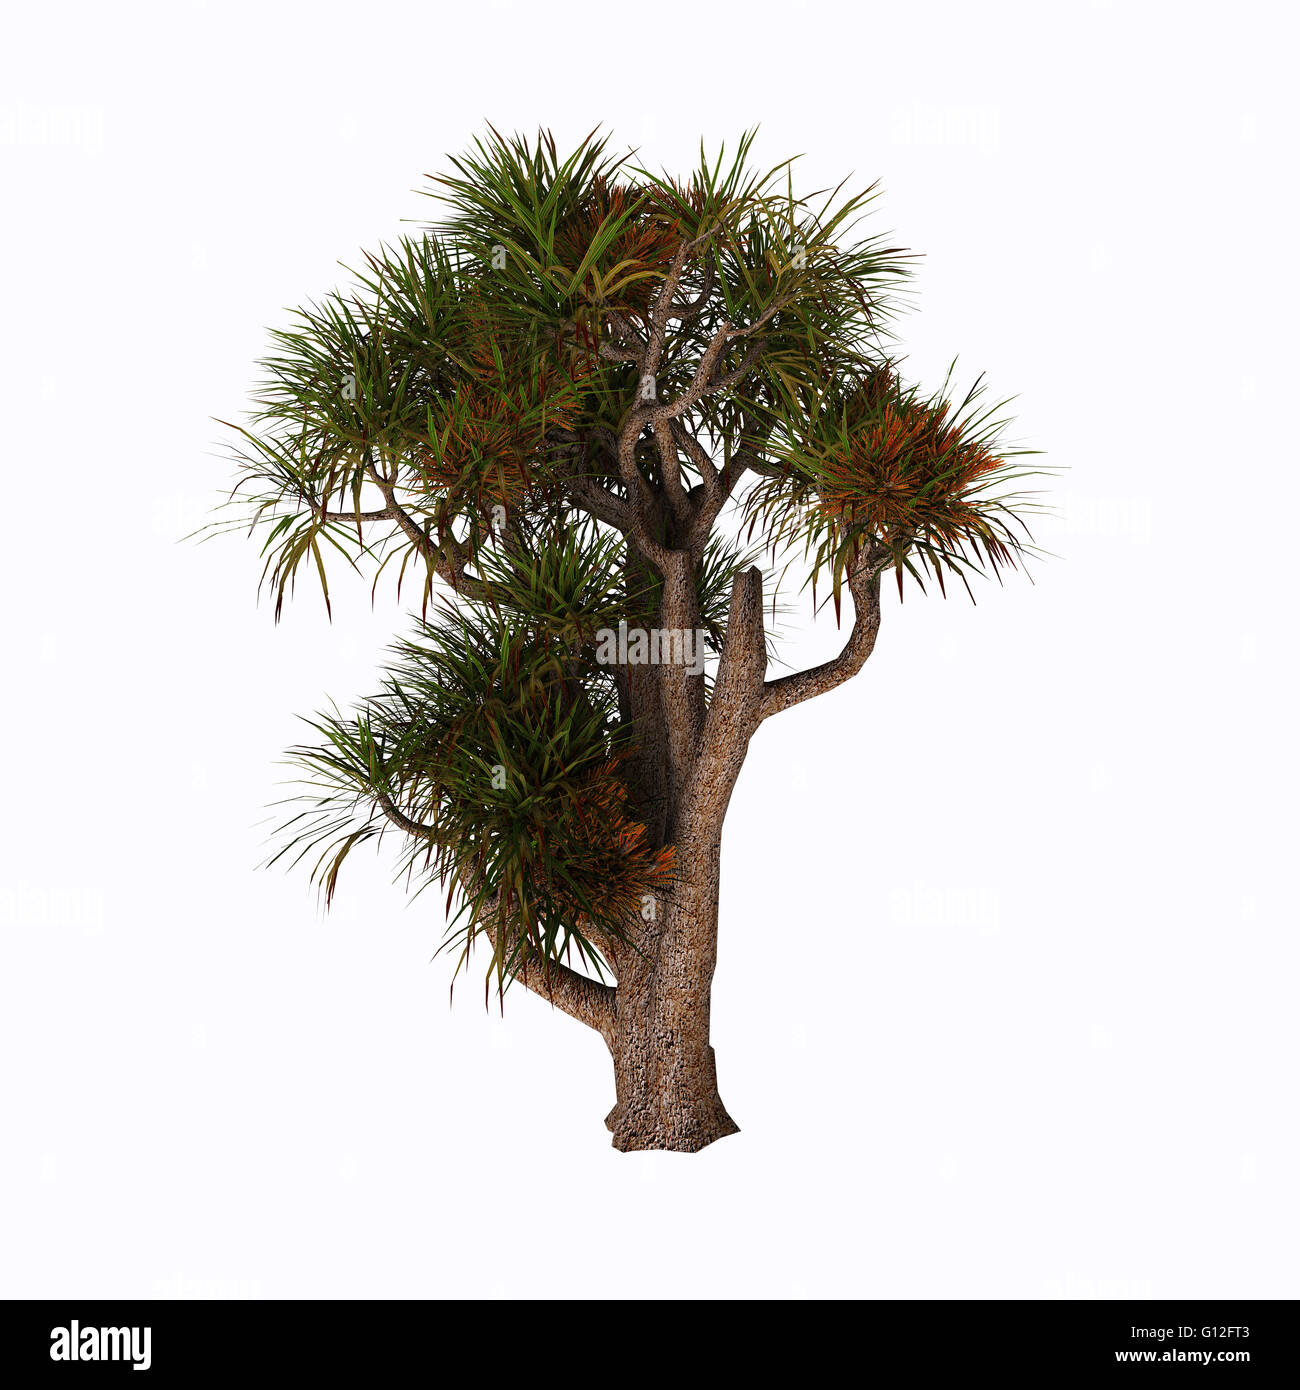 Cordyline Australis, allgemein bekannt als der Kohl Baum, Kohl-Palme oder Ti Kouka, ist ein weit verzweigtes Monocot Baum. Stockfoto